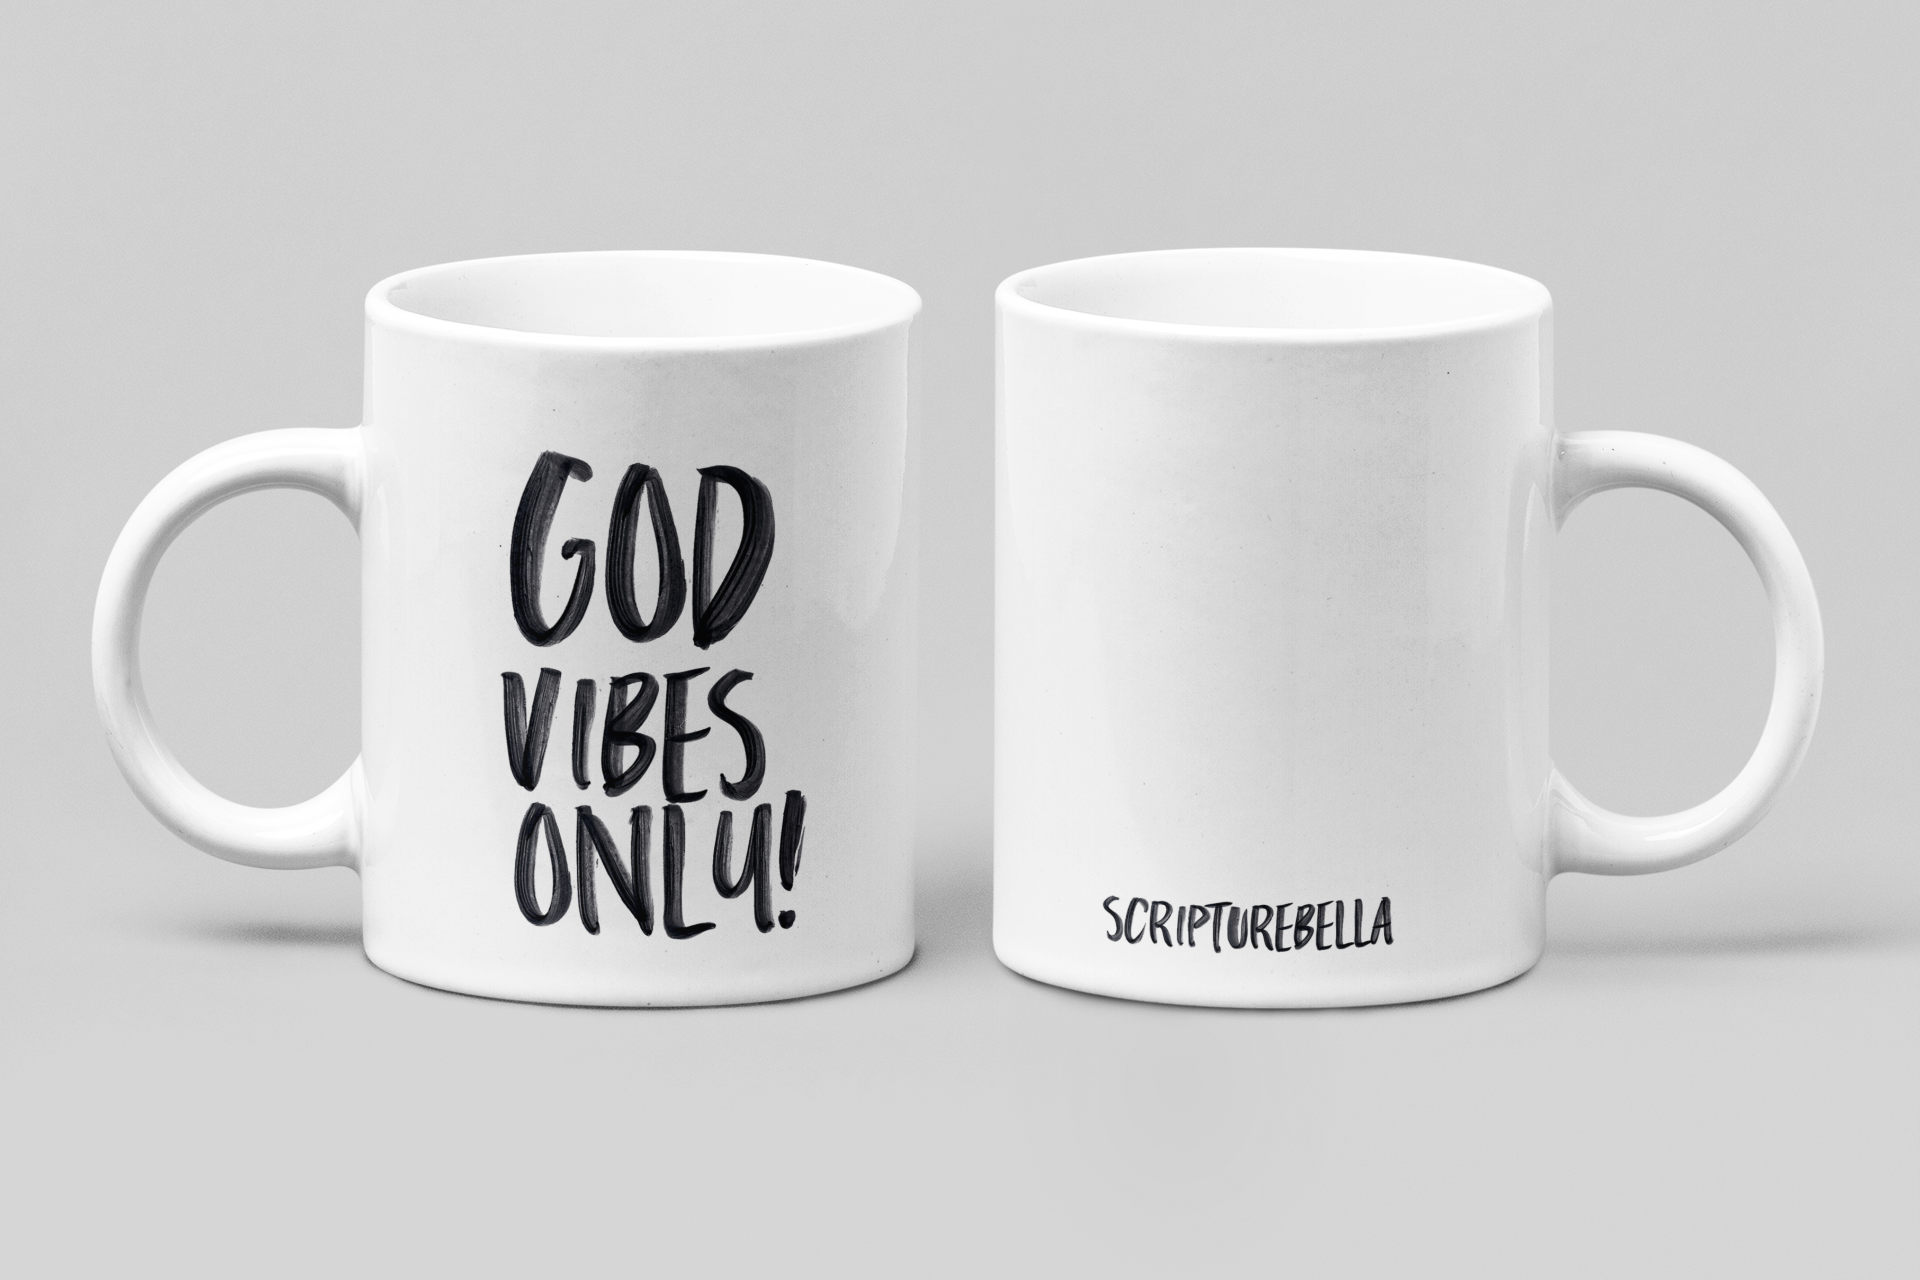 God vibes only, Christian mug, Mug with bible verse, mug with scriptures, motivational mug